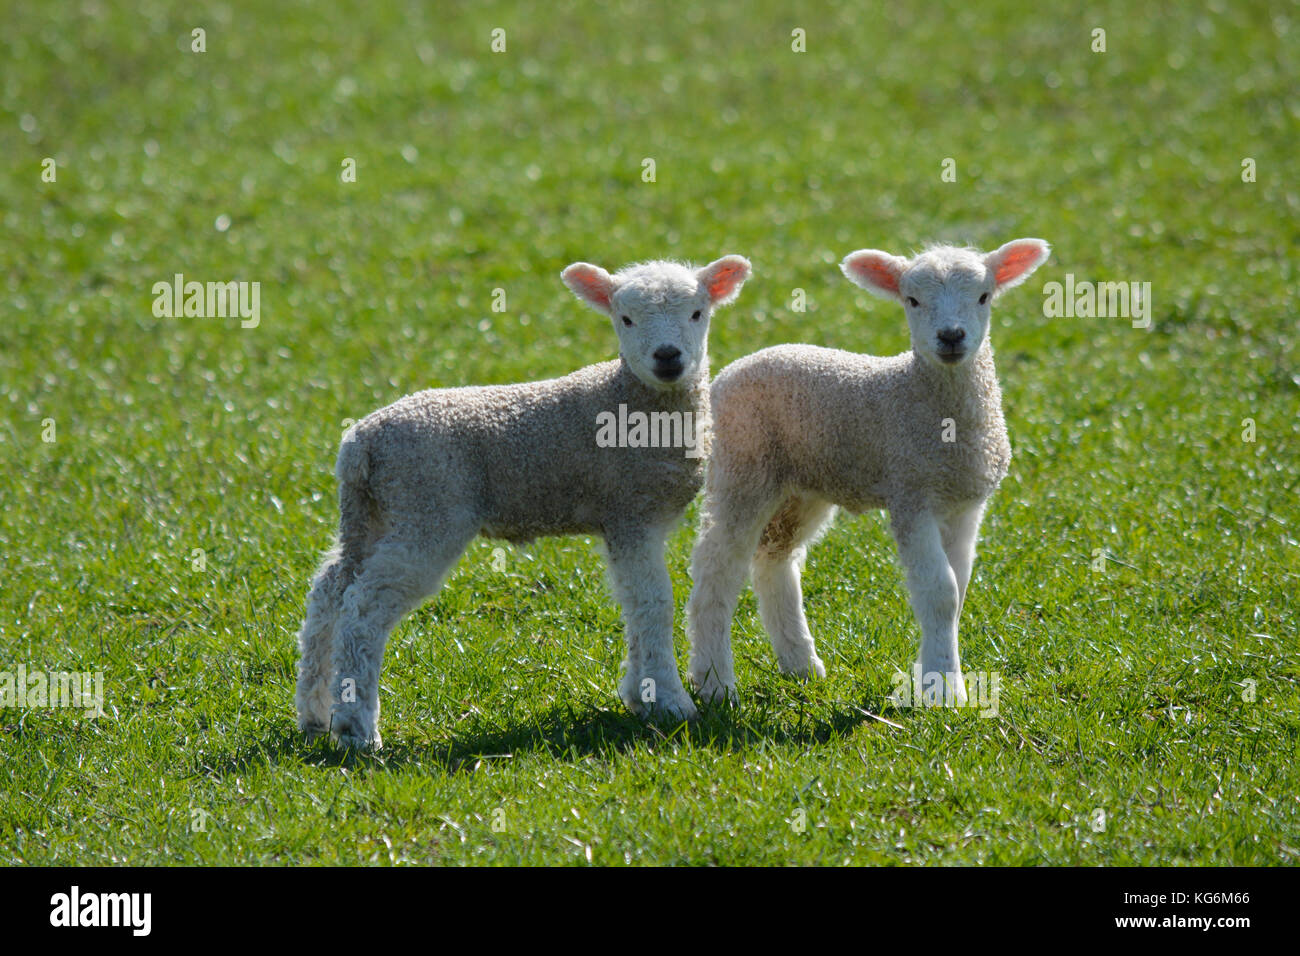 Deux lits jumeaux nouveau-né bébé mignon agneaux unis dans un champ au printemps Banque D'Images